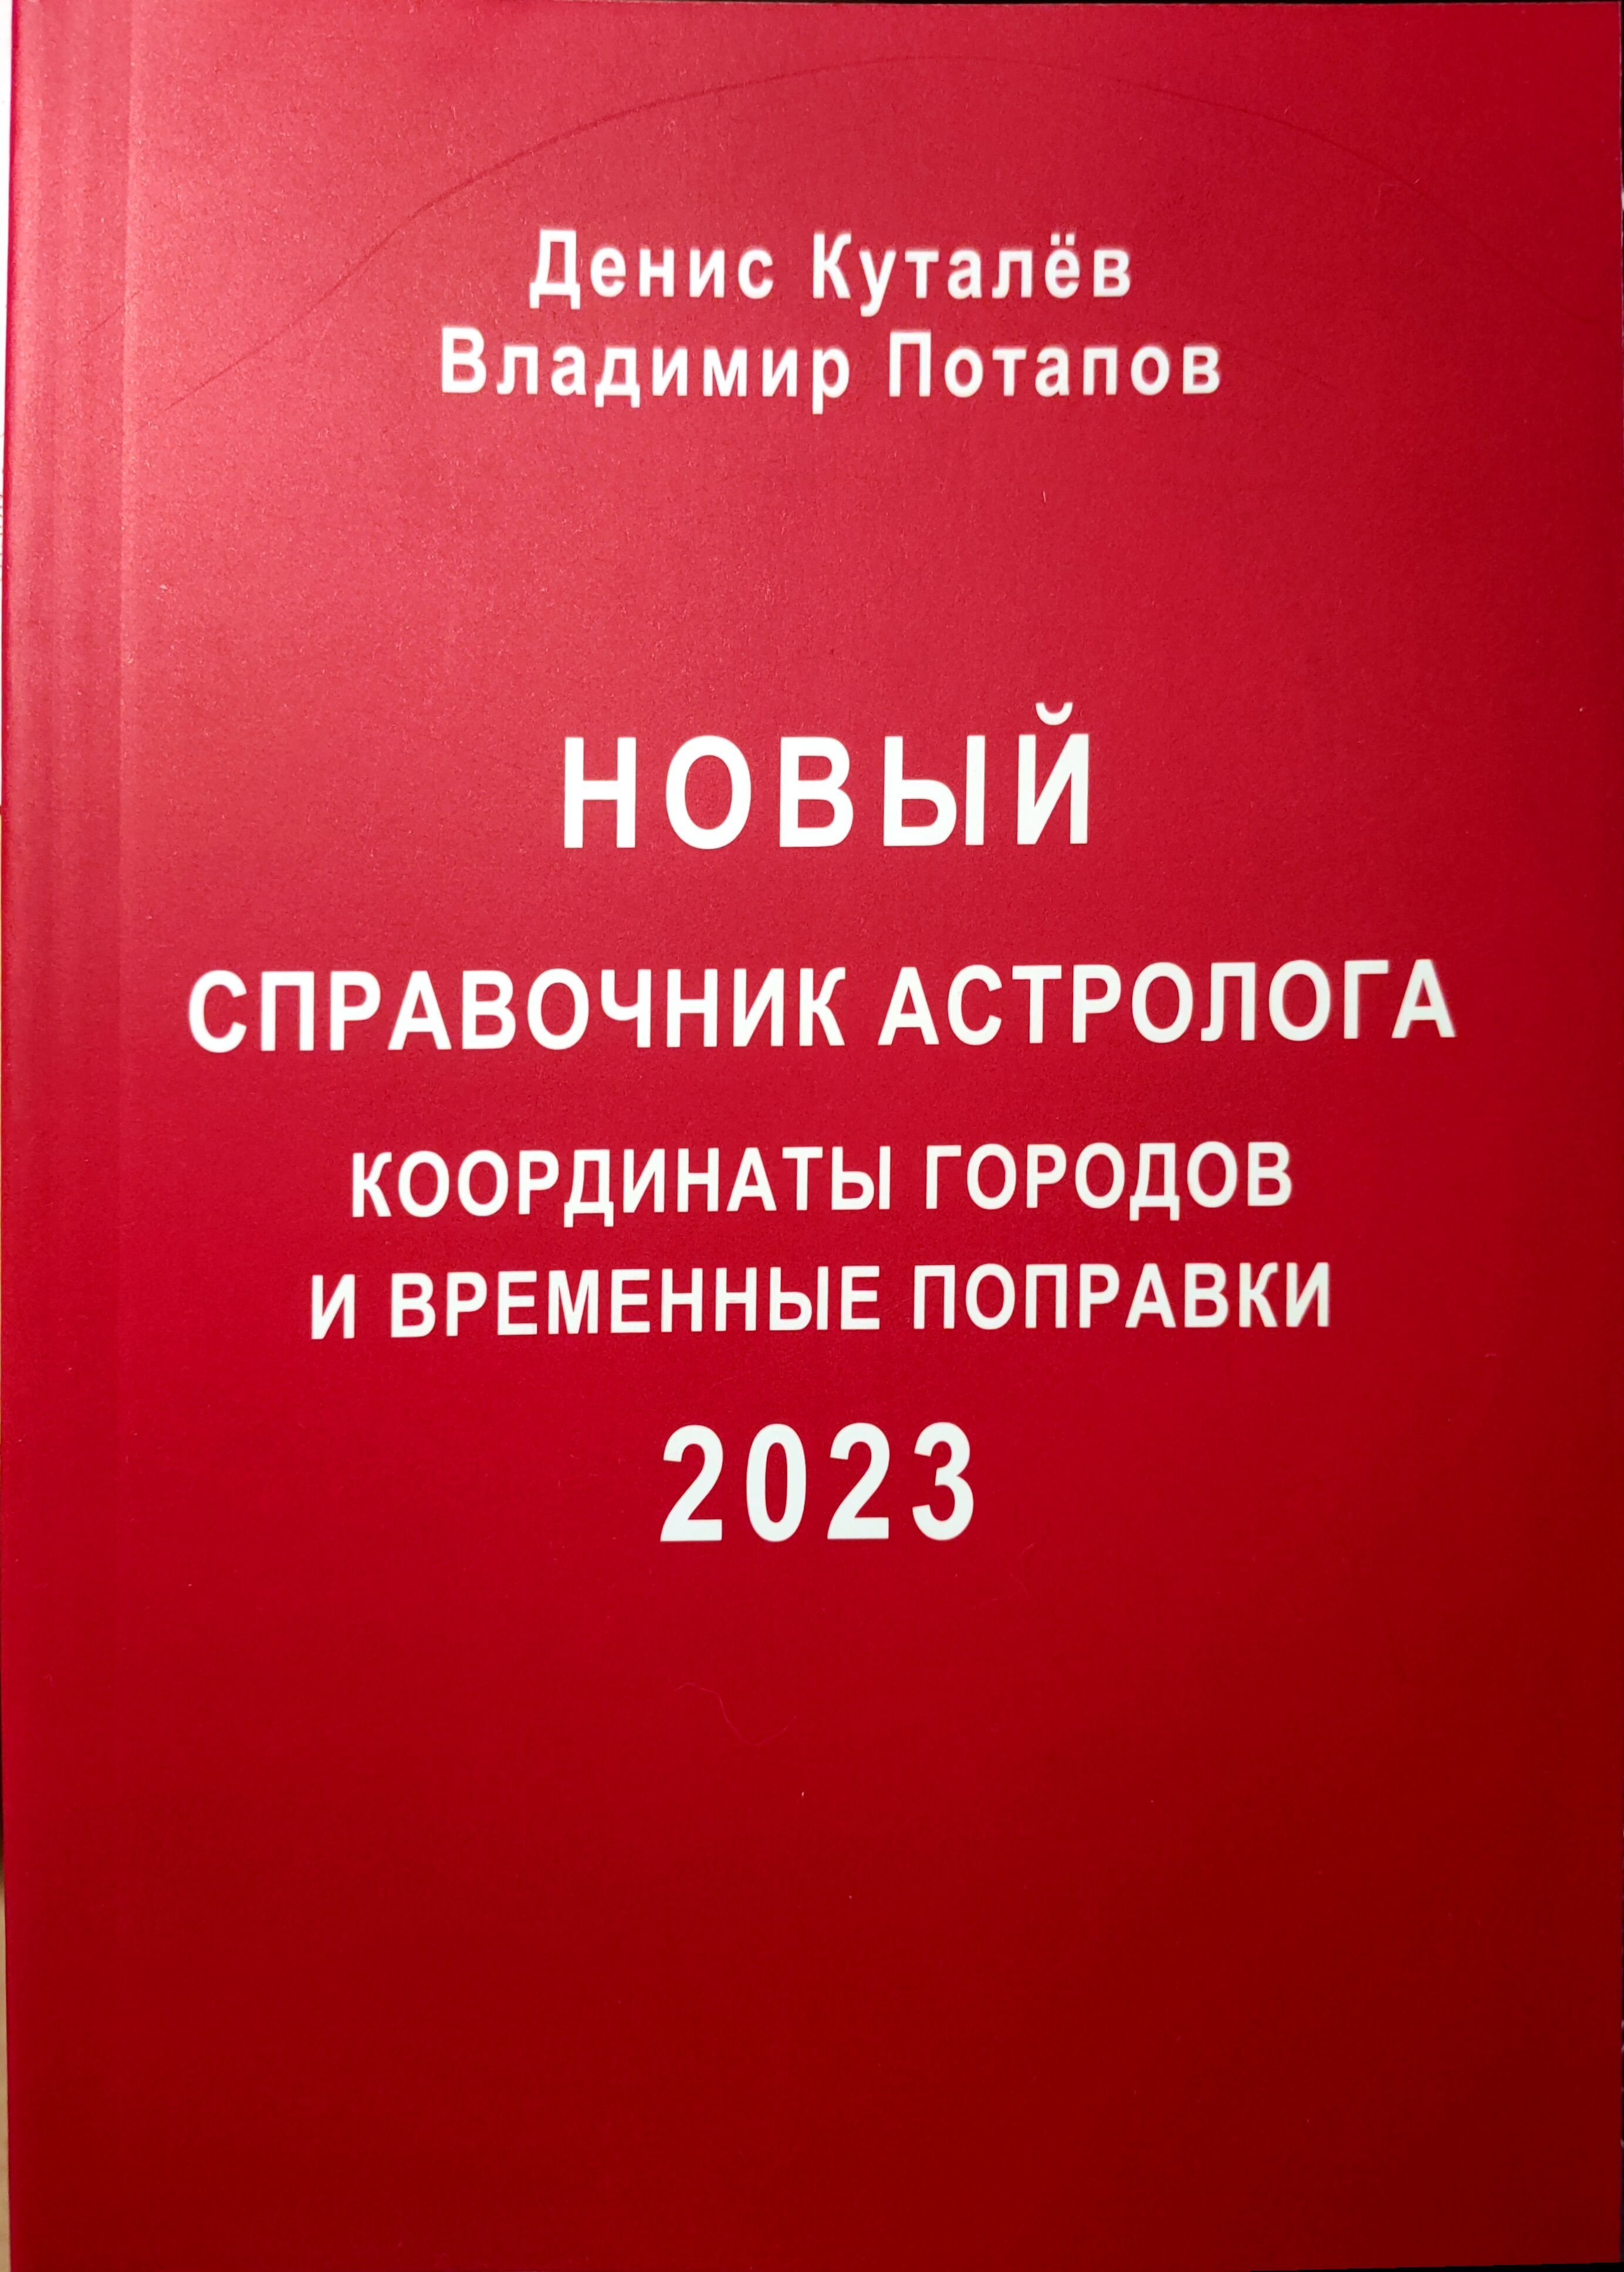 Новый справочник астролога координаты городов и временных поправок. 209н с изменениями на 2023